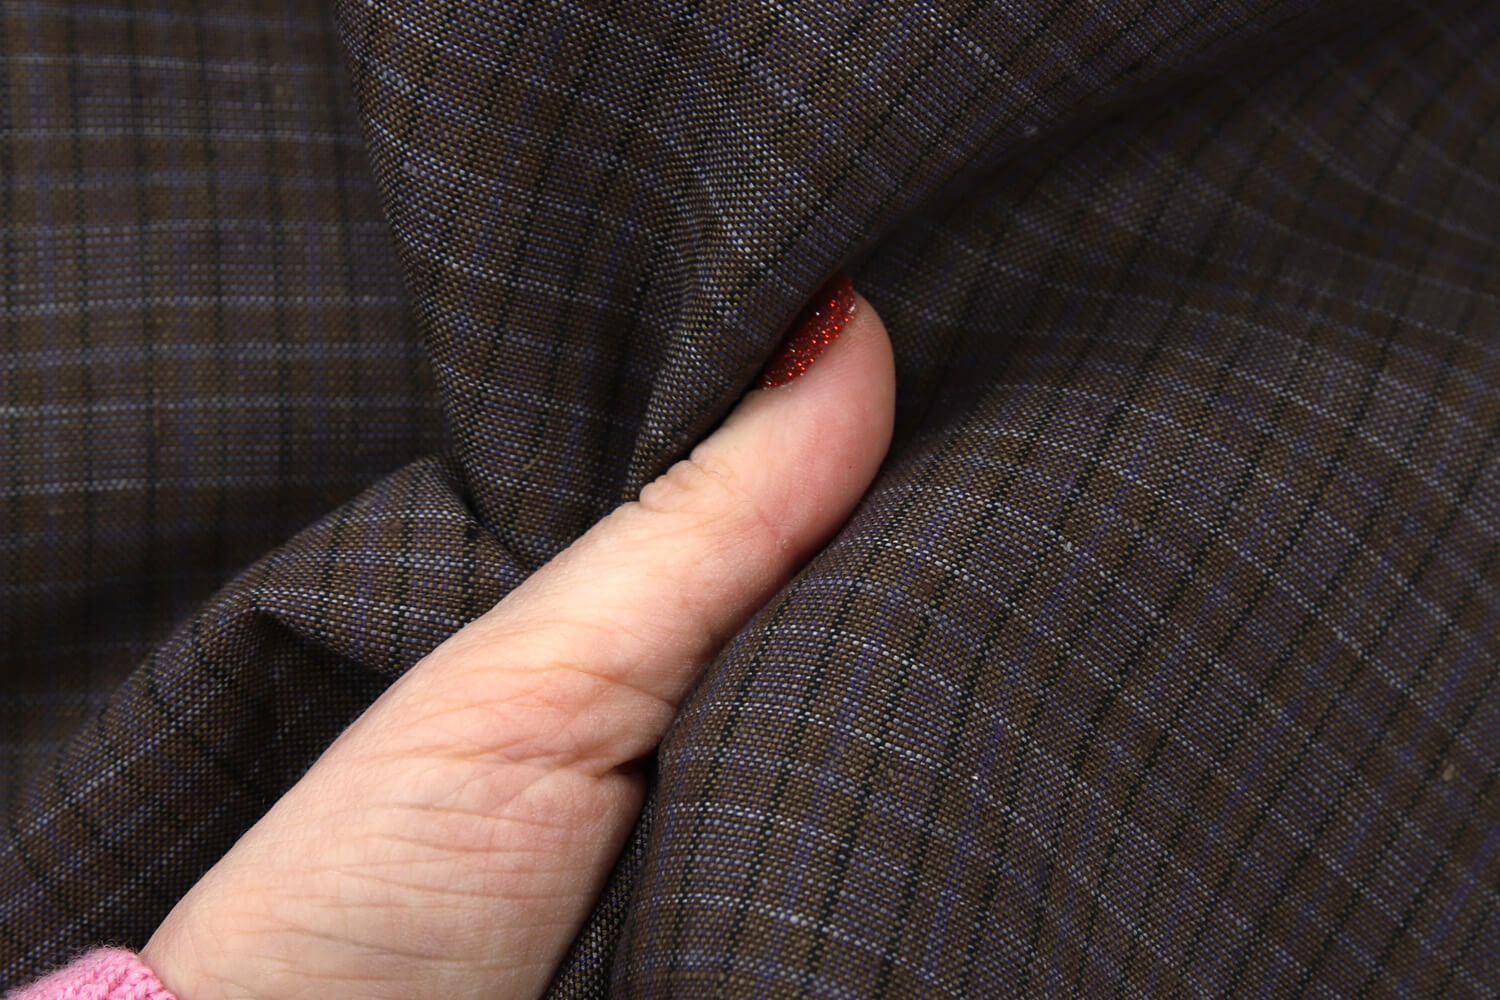 Льняная ткань в клетку Брун-ло Кучин-ли, цвет Коричневый, фото 1